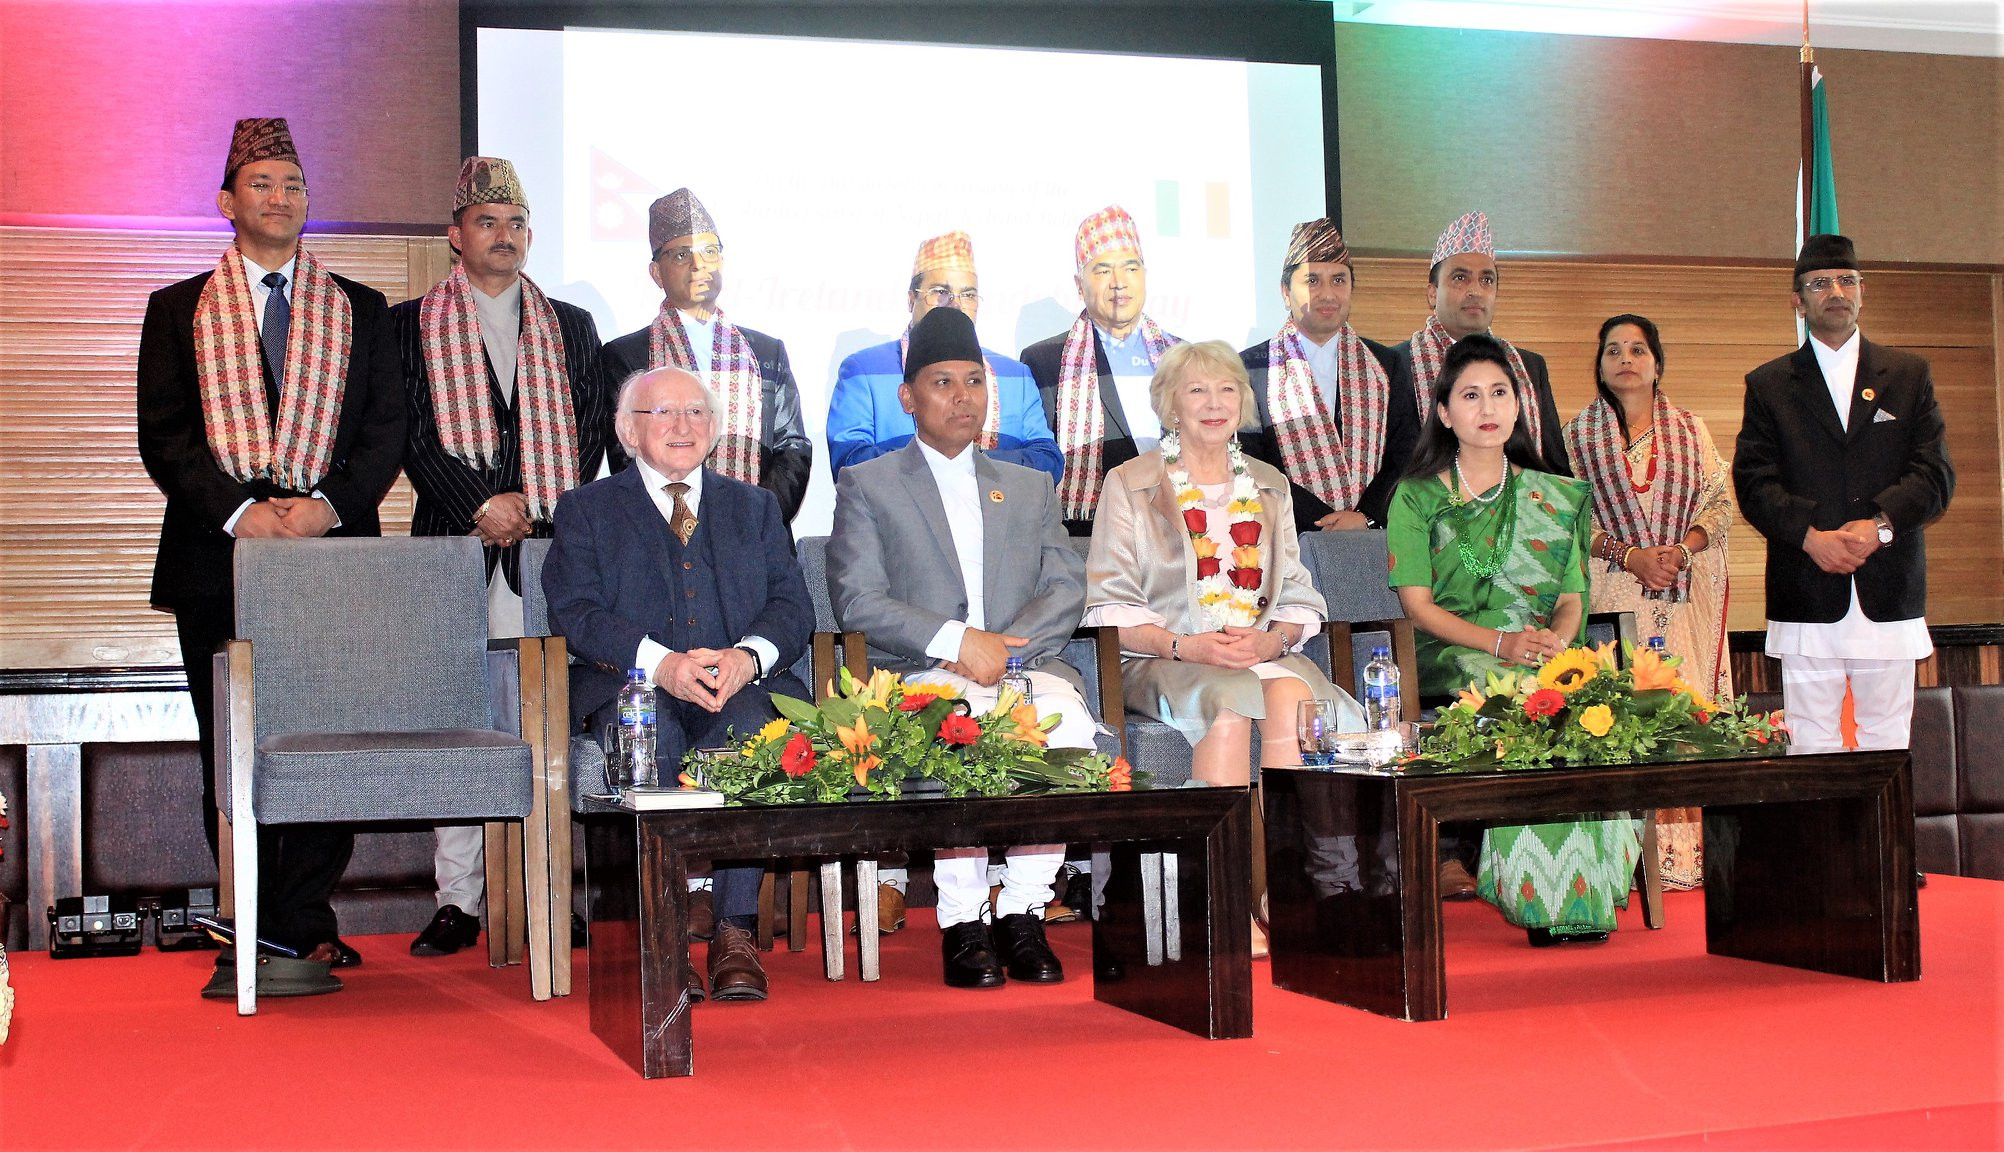 नेपाल र आयरल्याण्डबीच दौत्य सम्वन्ध स्थापनाको बीसौं वर्षको अवसरमा आयोजित कार्यक्रममा उपस्थित आयरल्याण्डका राष्ट्रपति माइकल डी. हिगिन्स लगायत विशिष्ठ अतिथिहरू। तस्बिरः नेपाली दूतावास लण्डन